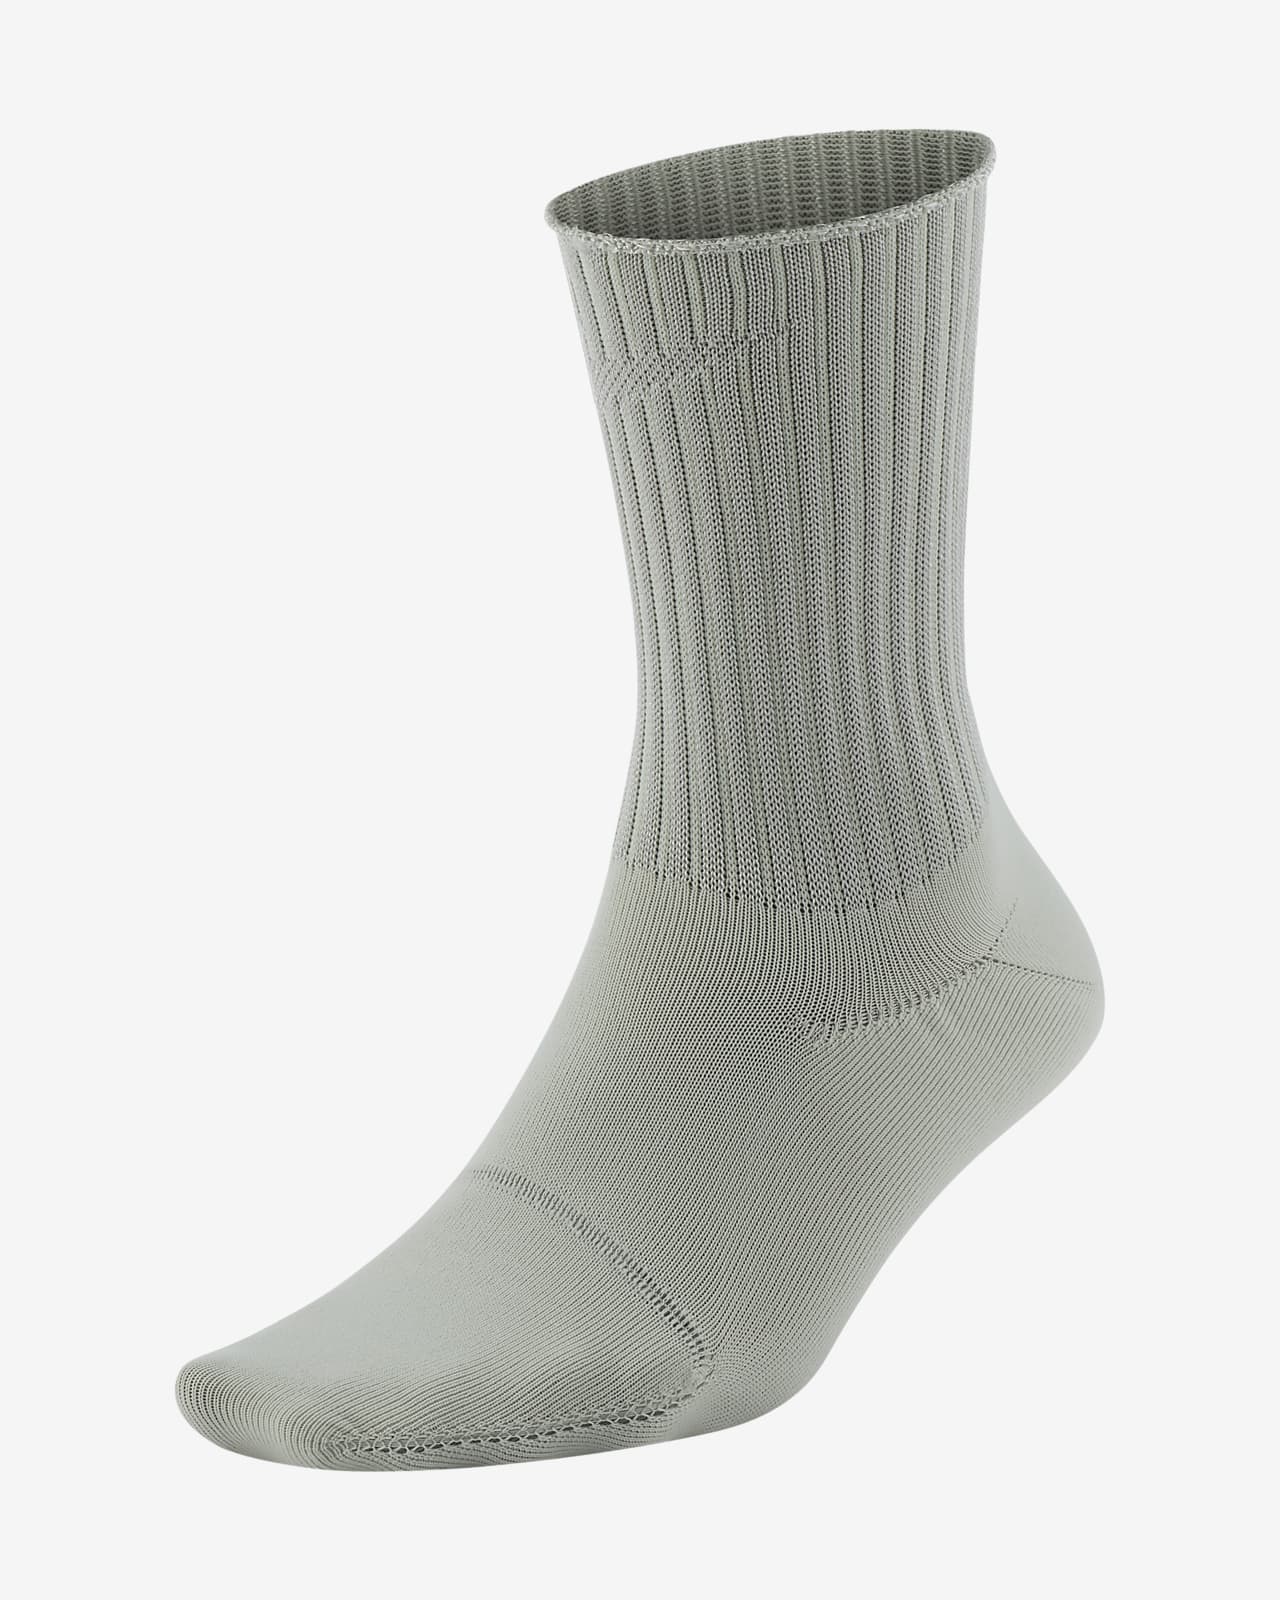 Nike One Women's Ankle Socks